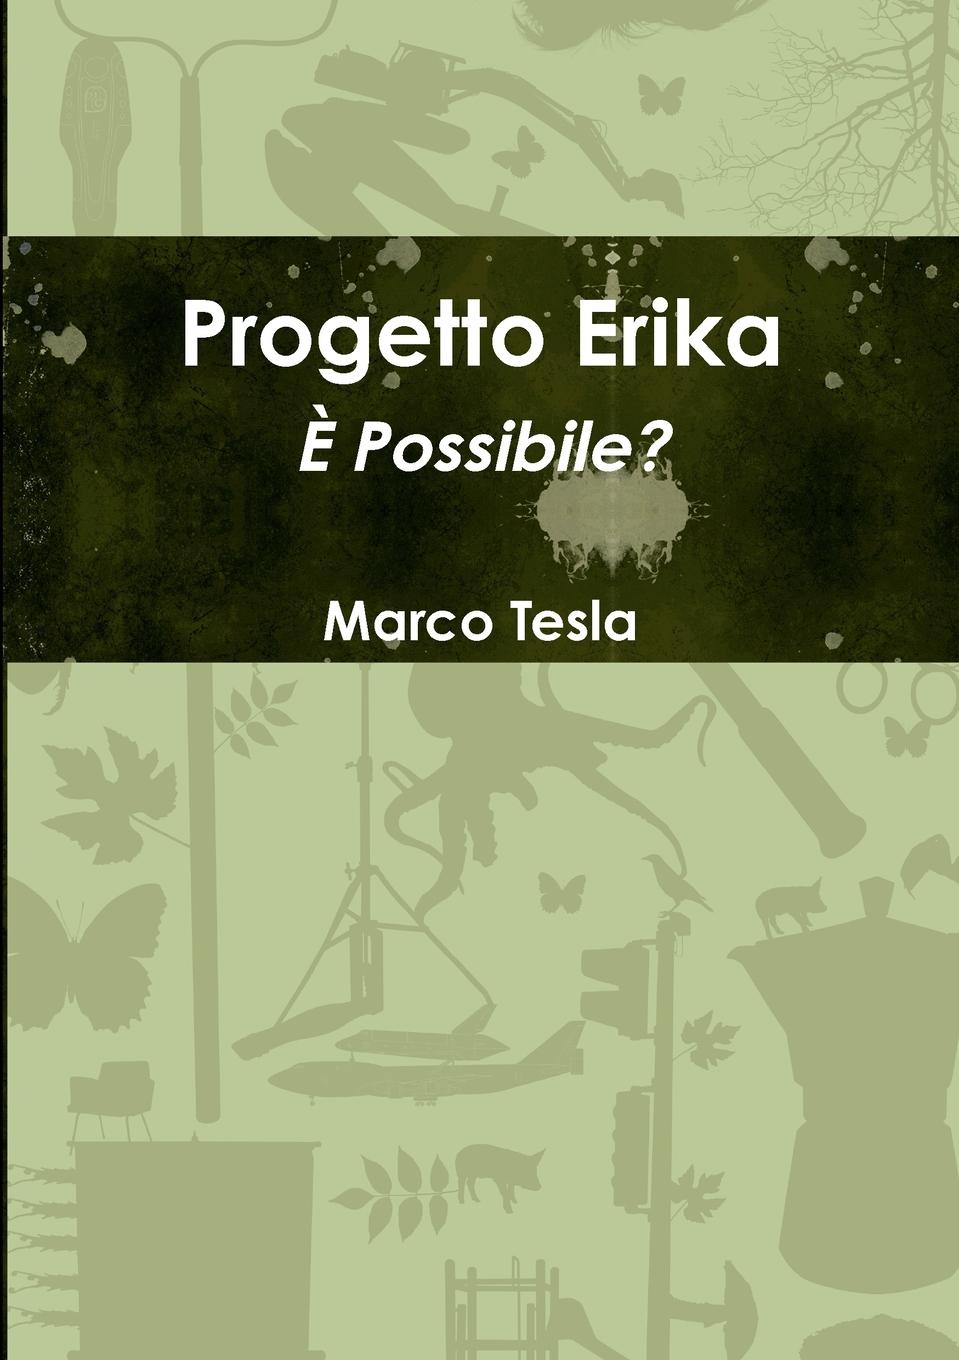 Progetto Erika - Tesla, Marco